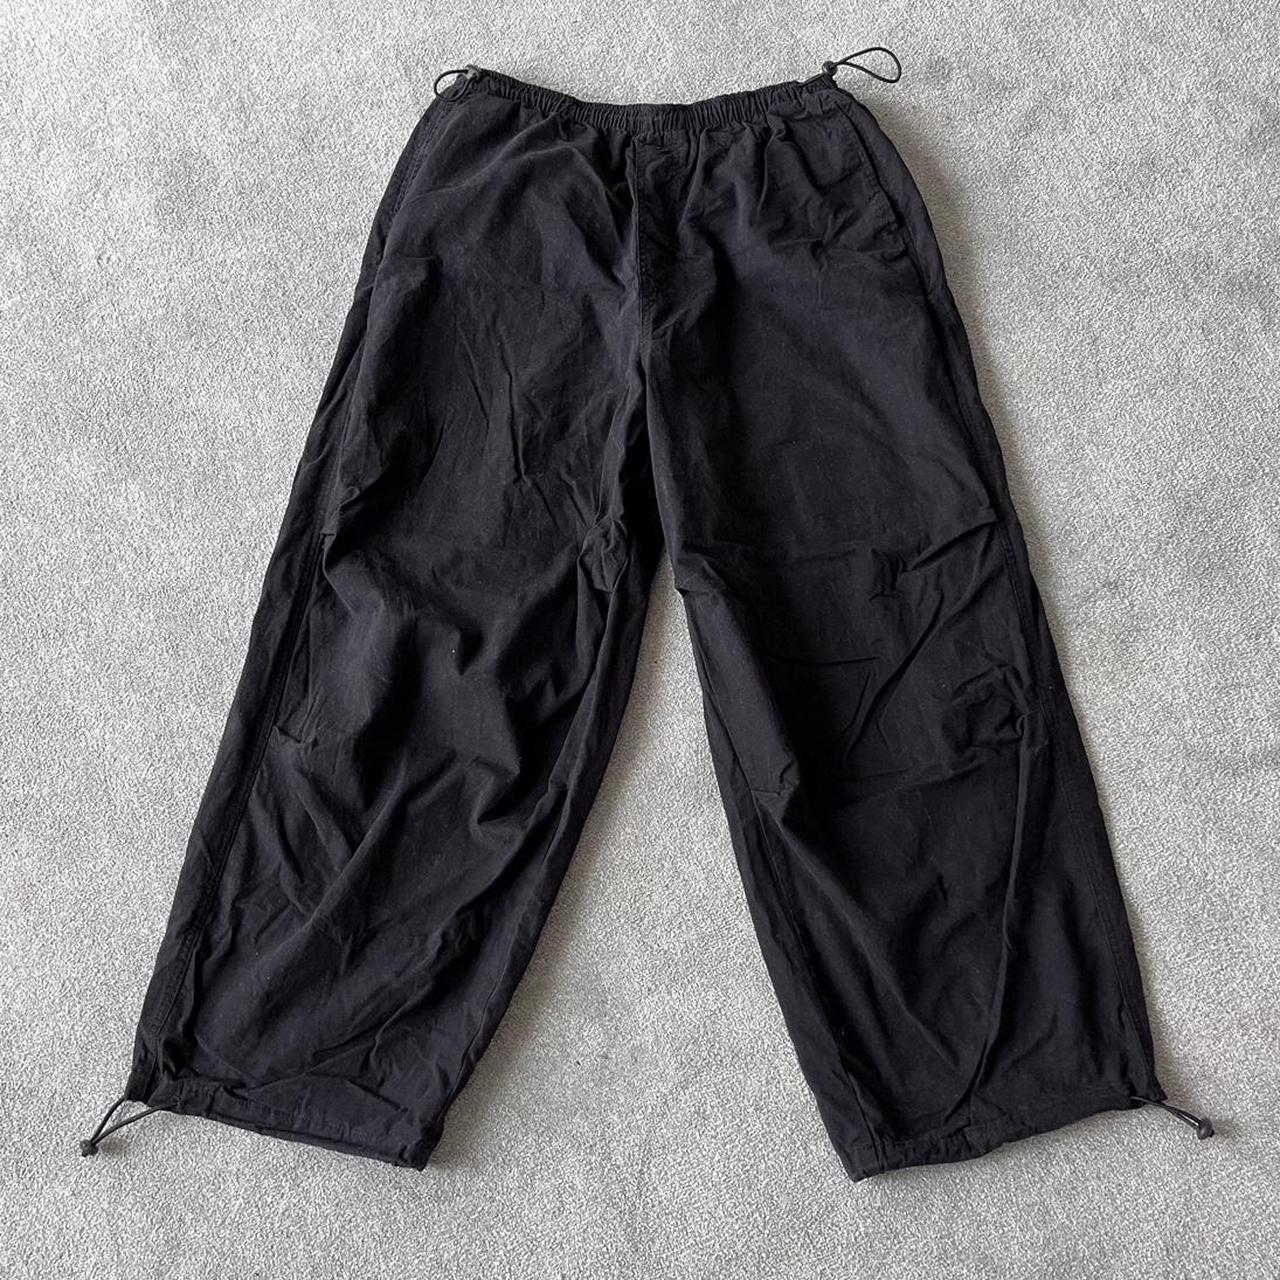 Black asos design parachute pants. In perfect... - Depop